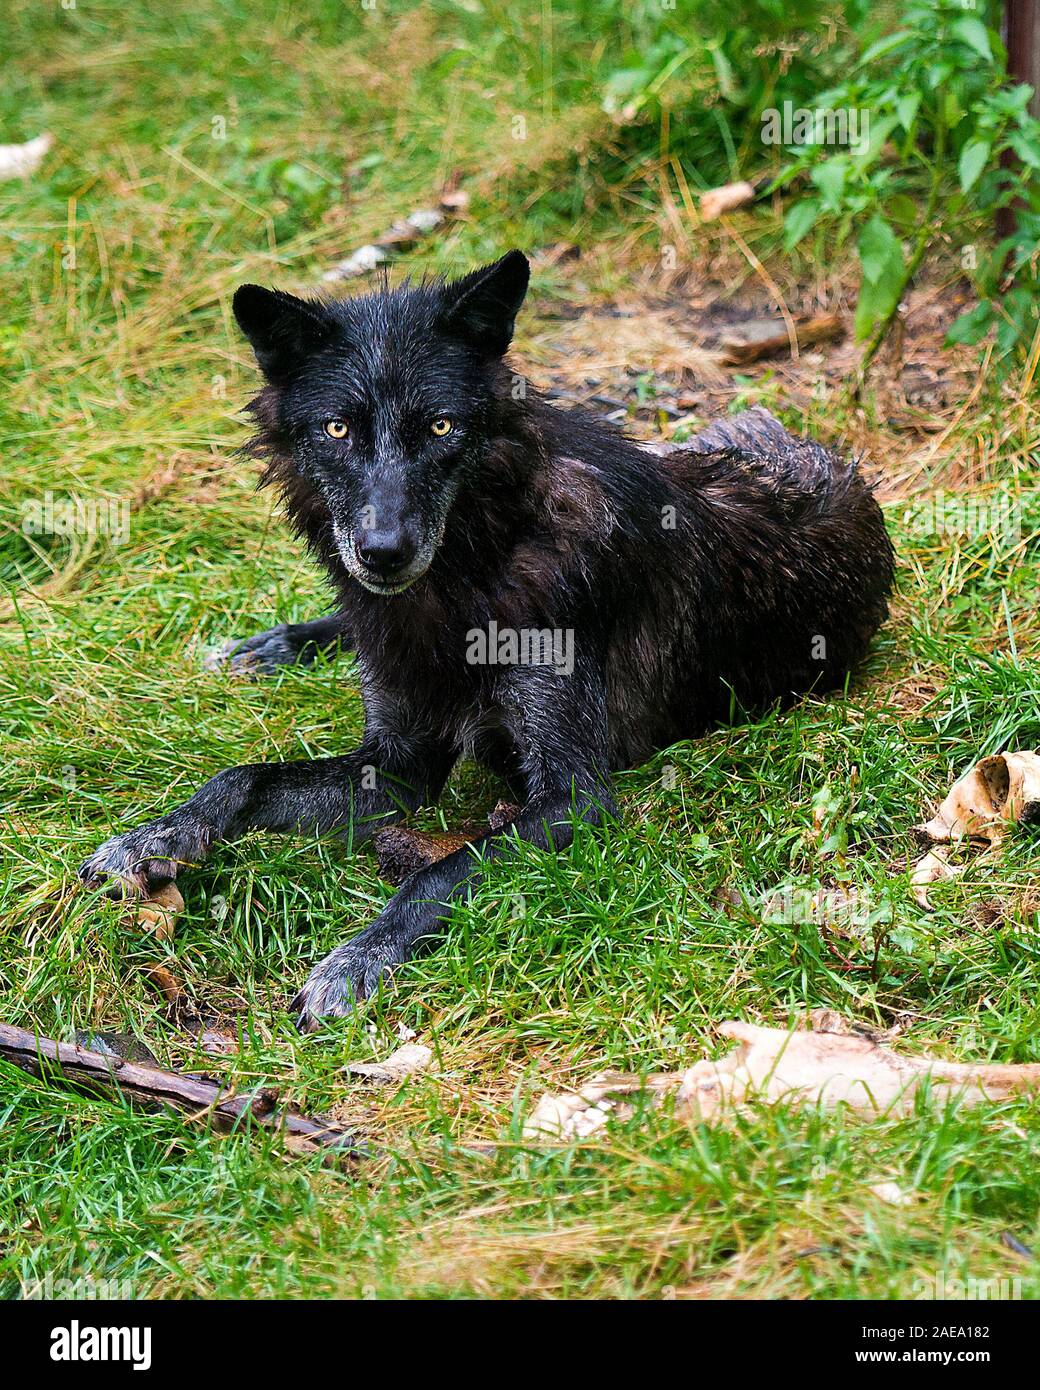 Animali Wolf close-up vista di profilo con un wet pelliccia sull'erba dopo una pioggia nella foresta visualizzazione nero argento pelliccia, Testa, occhi, orecchie, Foto Stock